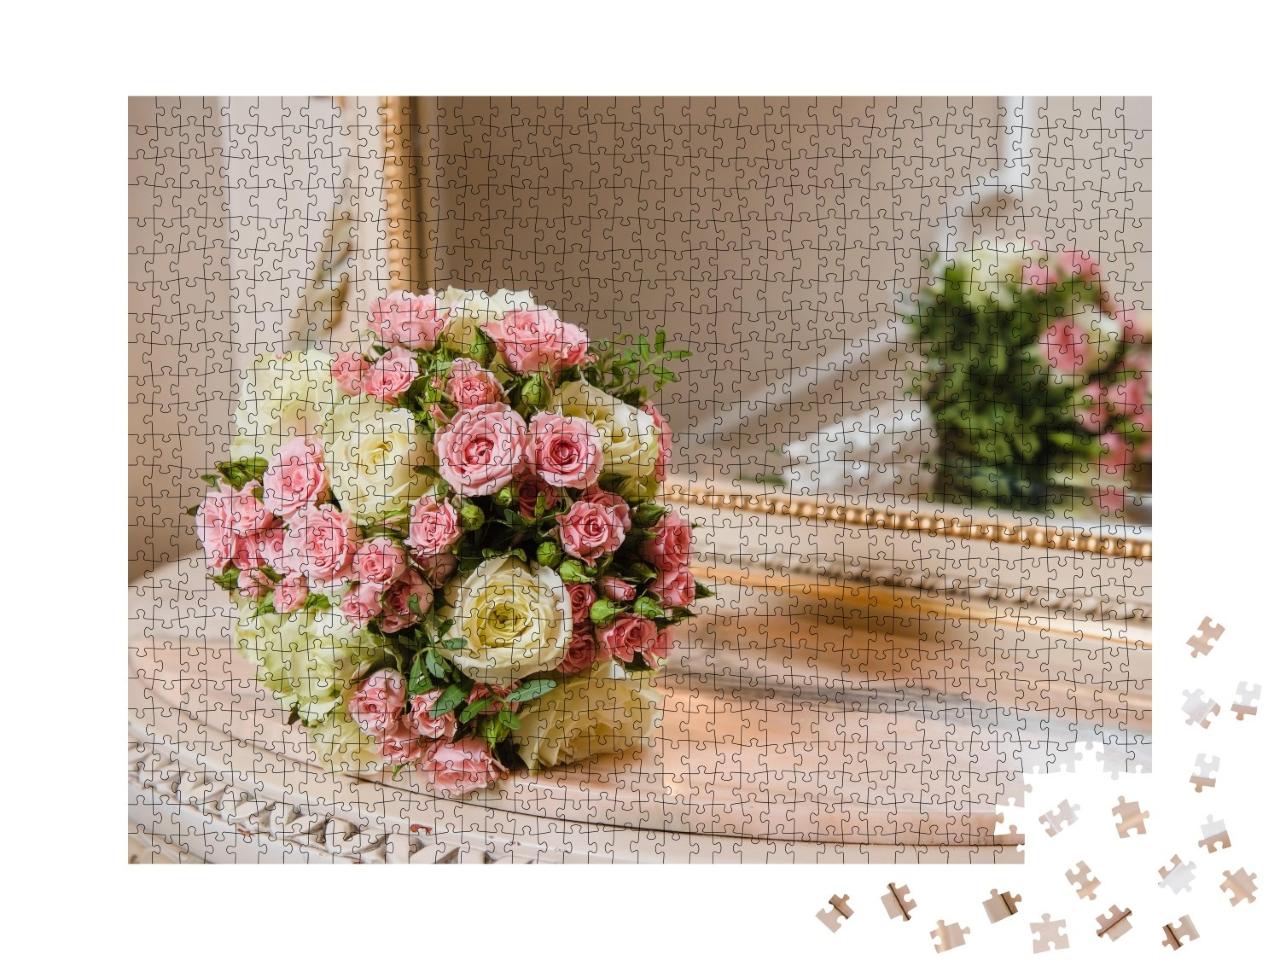 Puzzle de 1000 pièces « Bouquet de mariage coloré sur un miroir »